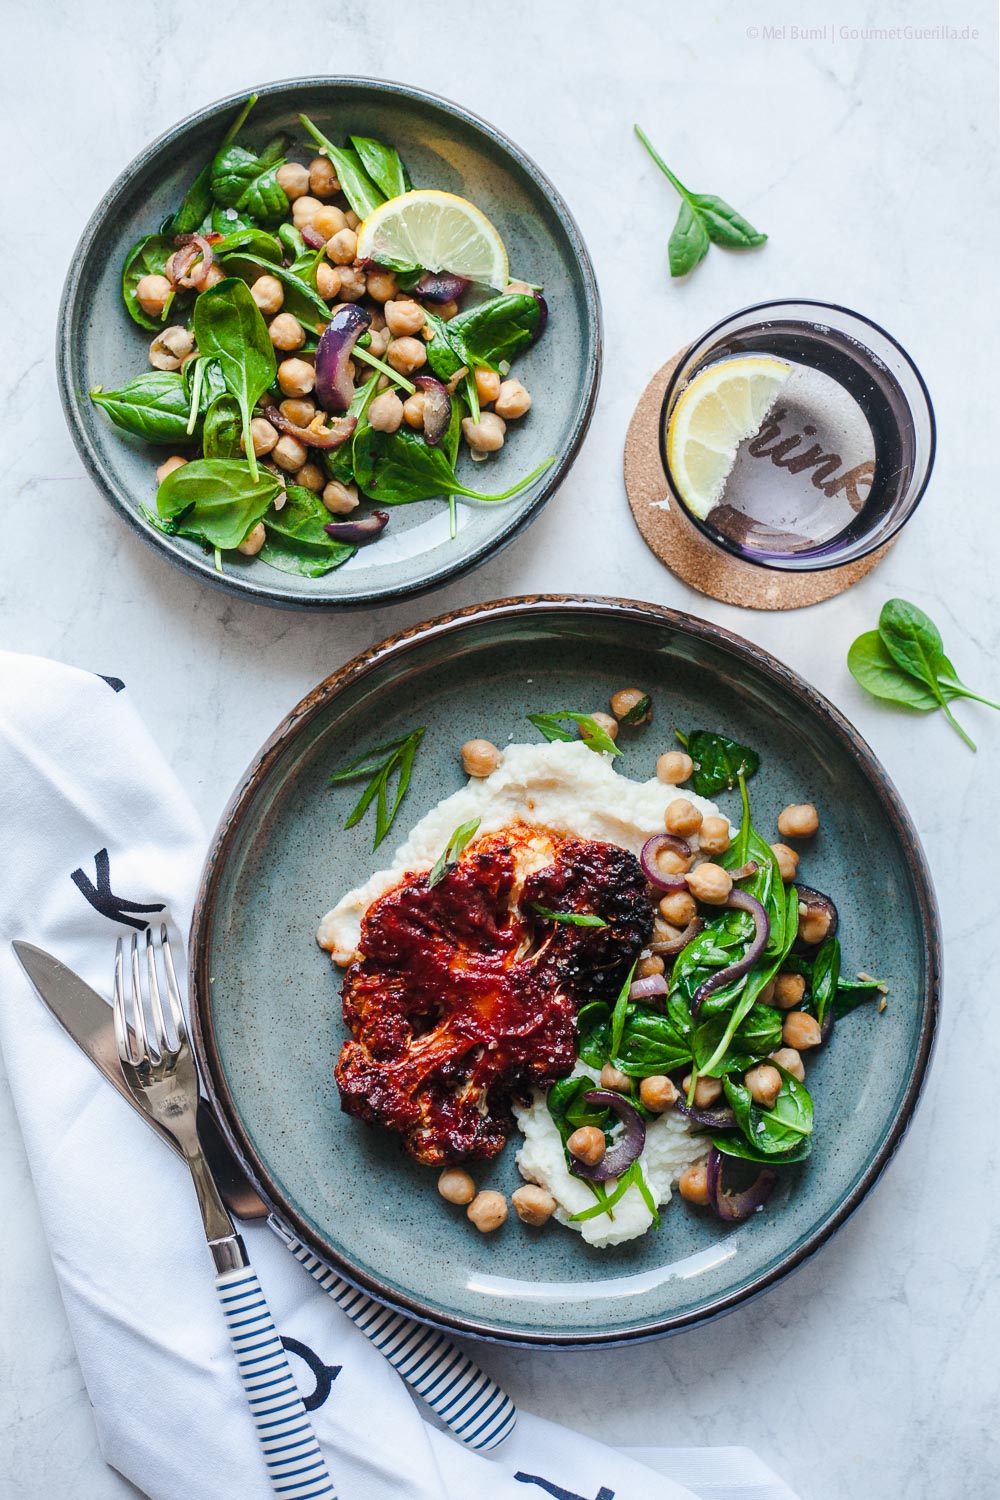 BBQ-Blumenkohlschnitzel mit lauwarmem Kichererbsen-Soinat-Salat aus der Heißluftfritteuese | GourmetGuerilla.de